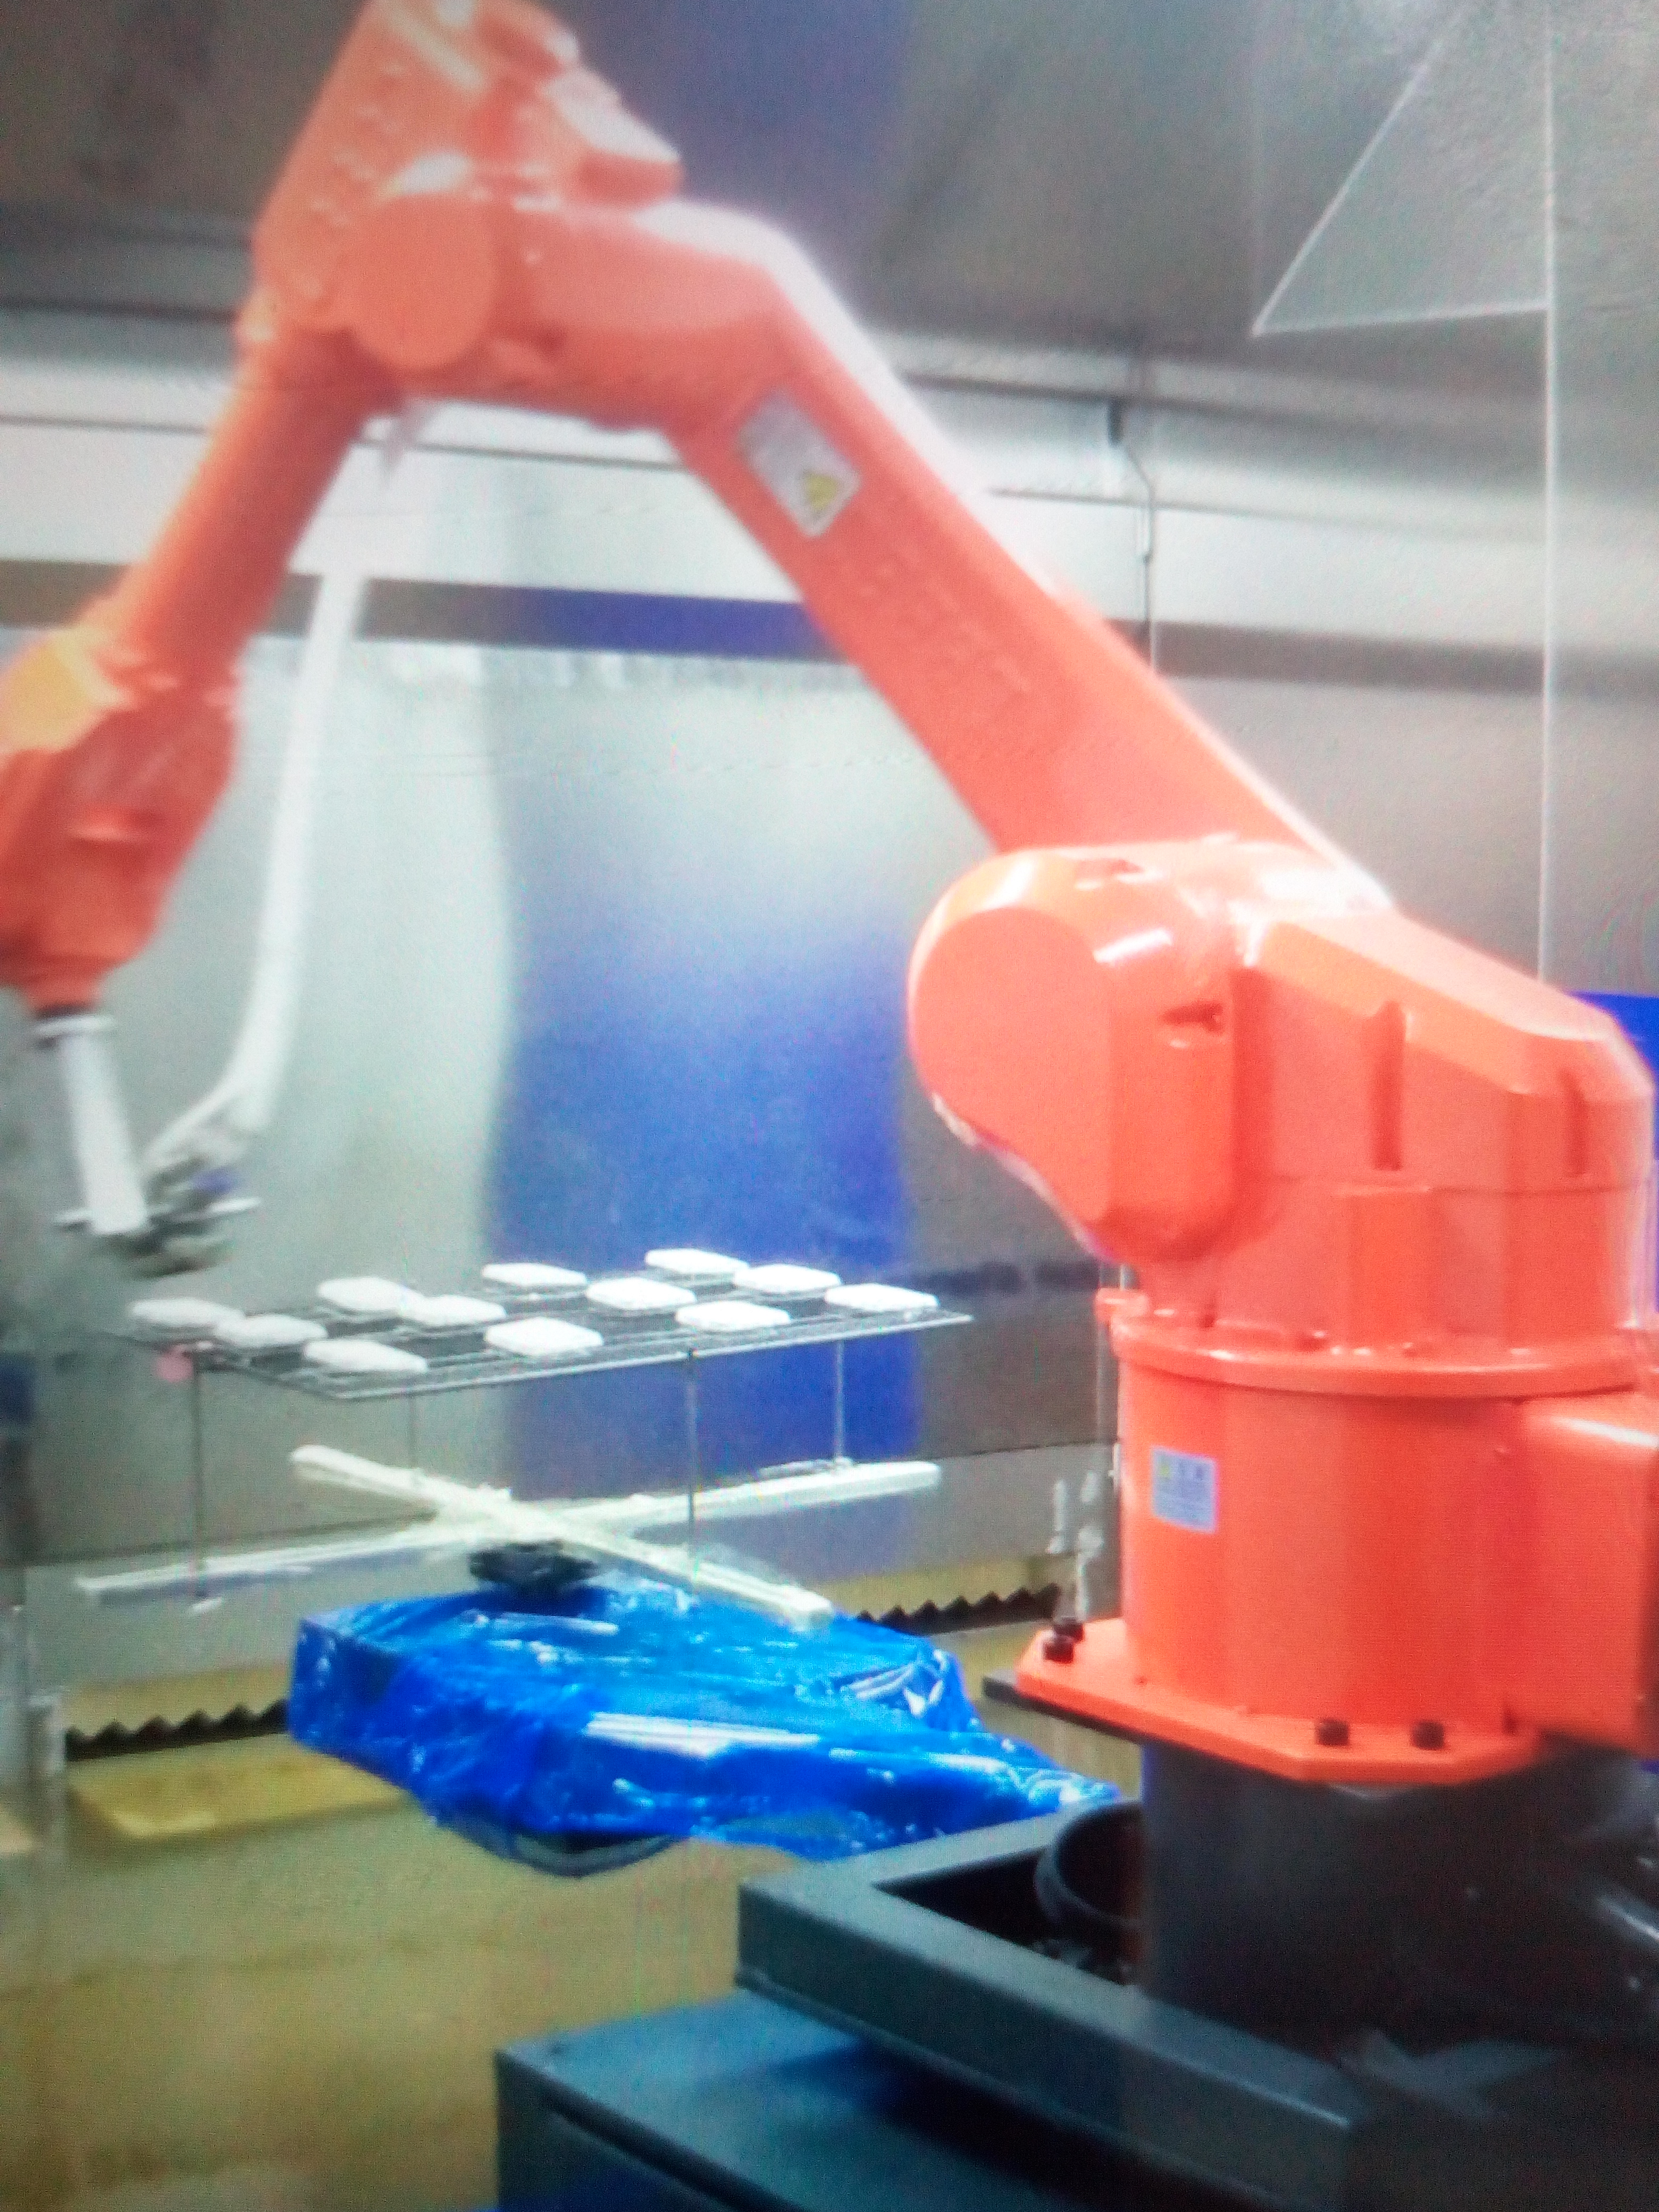 东莞喷涂机器人厂家 ，喷涂机器人哪里有， 木制品玩具喷涂机器人 汽车后视镜喷涂机器人